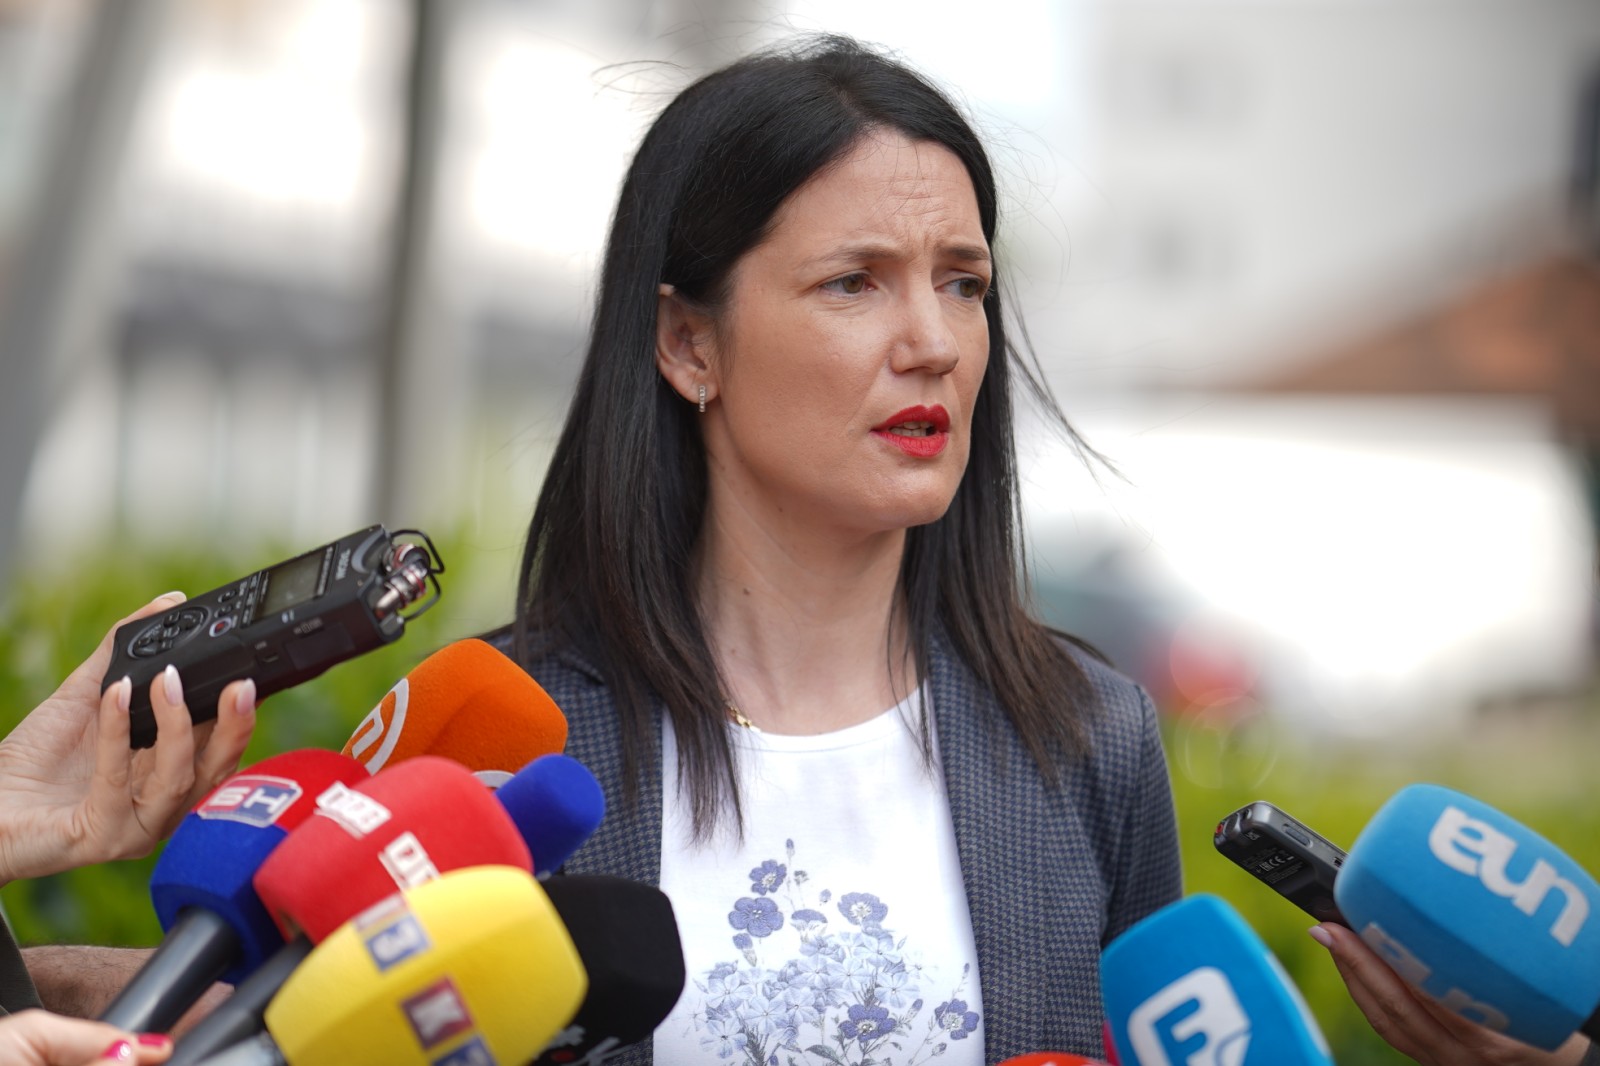 “Kleveta i stavljanje mete na čelo” Podnesena krivična prijava protiv Jelene Trivić